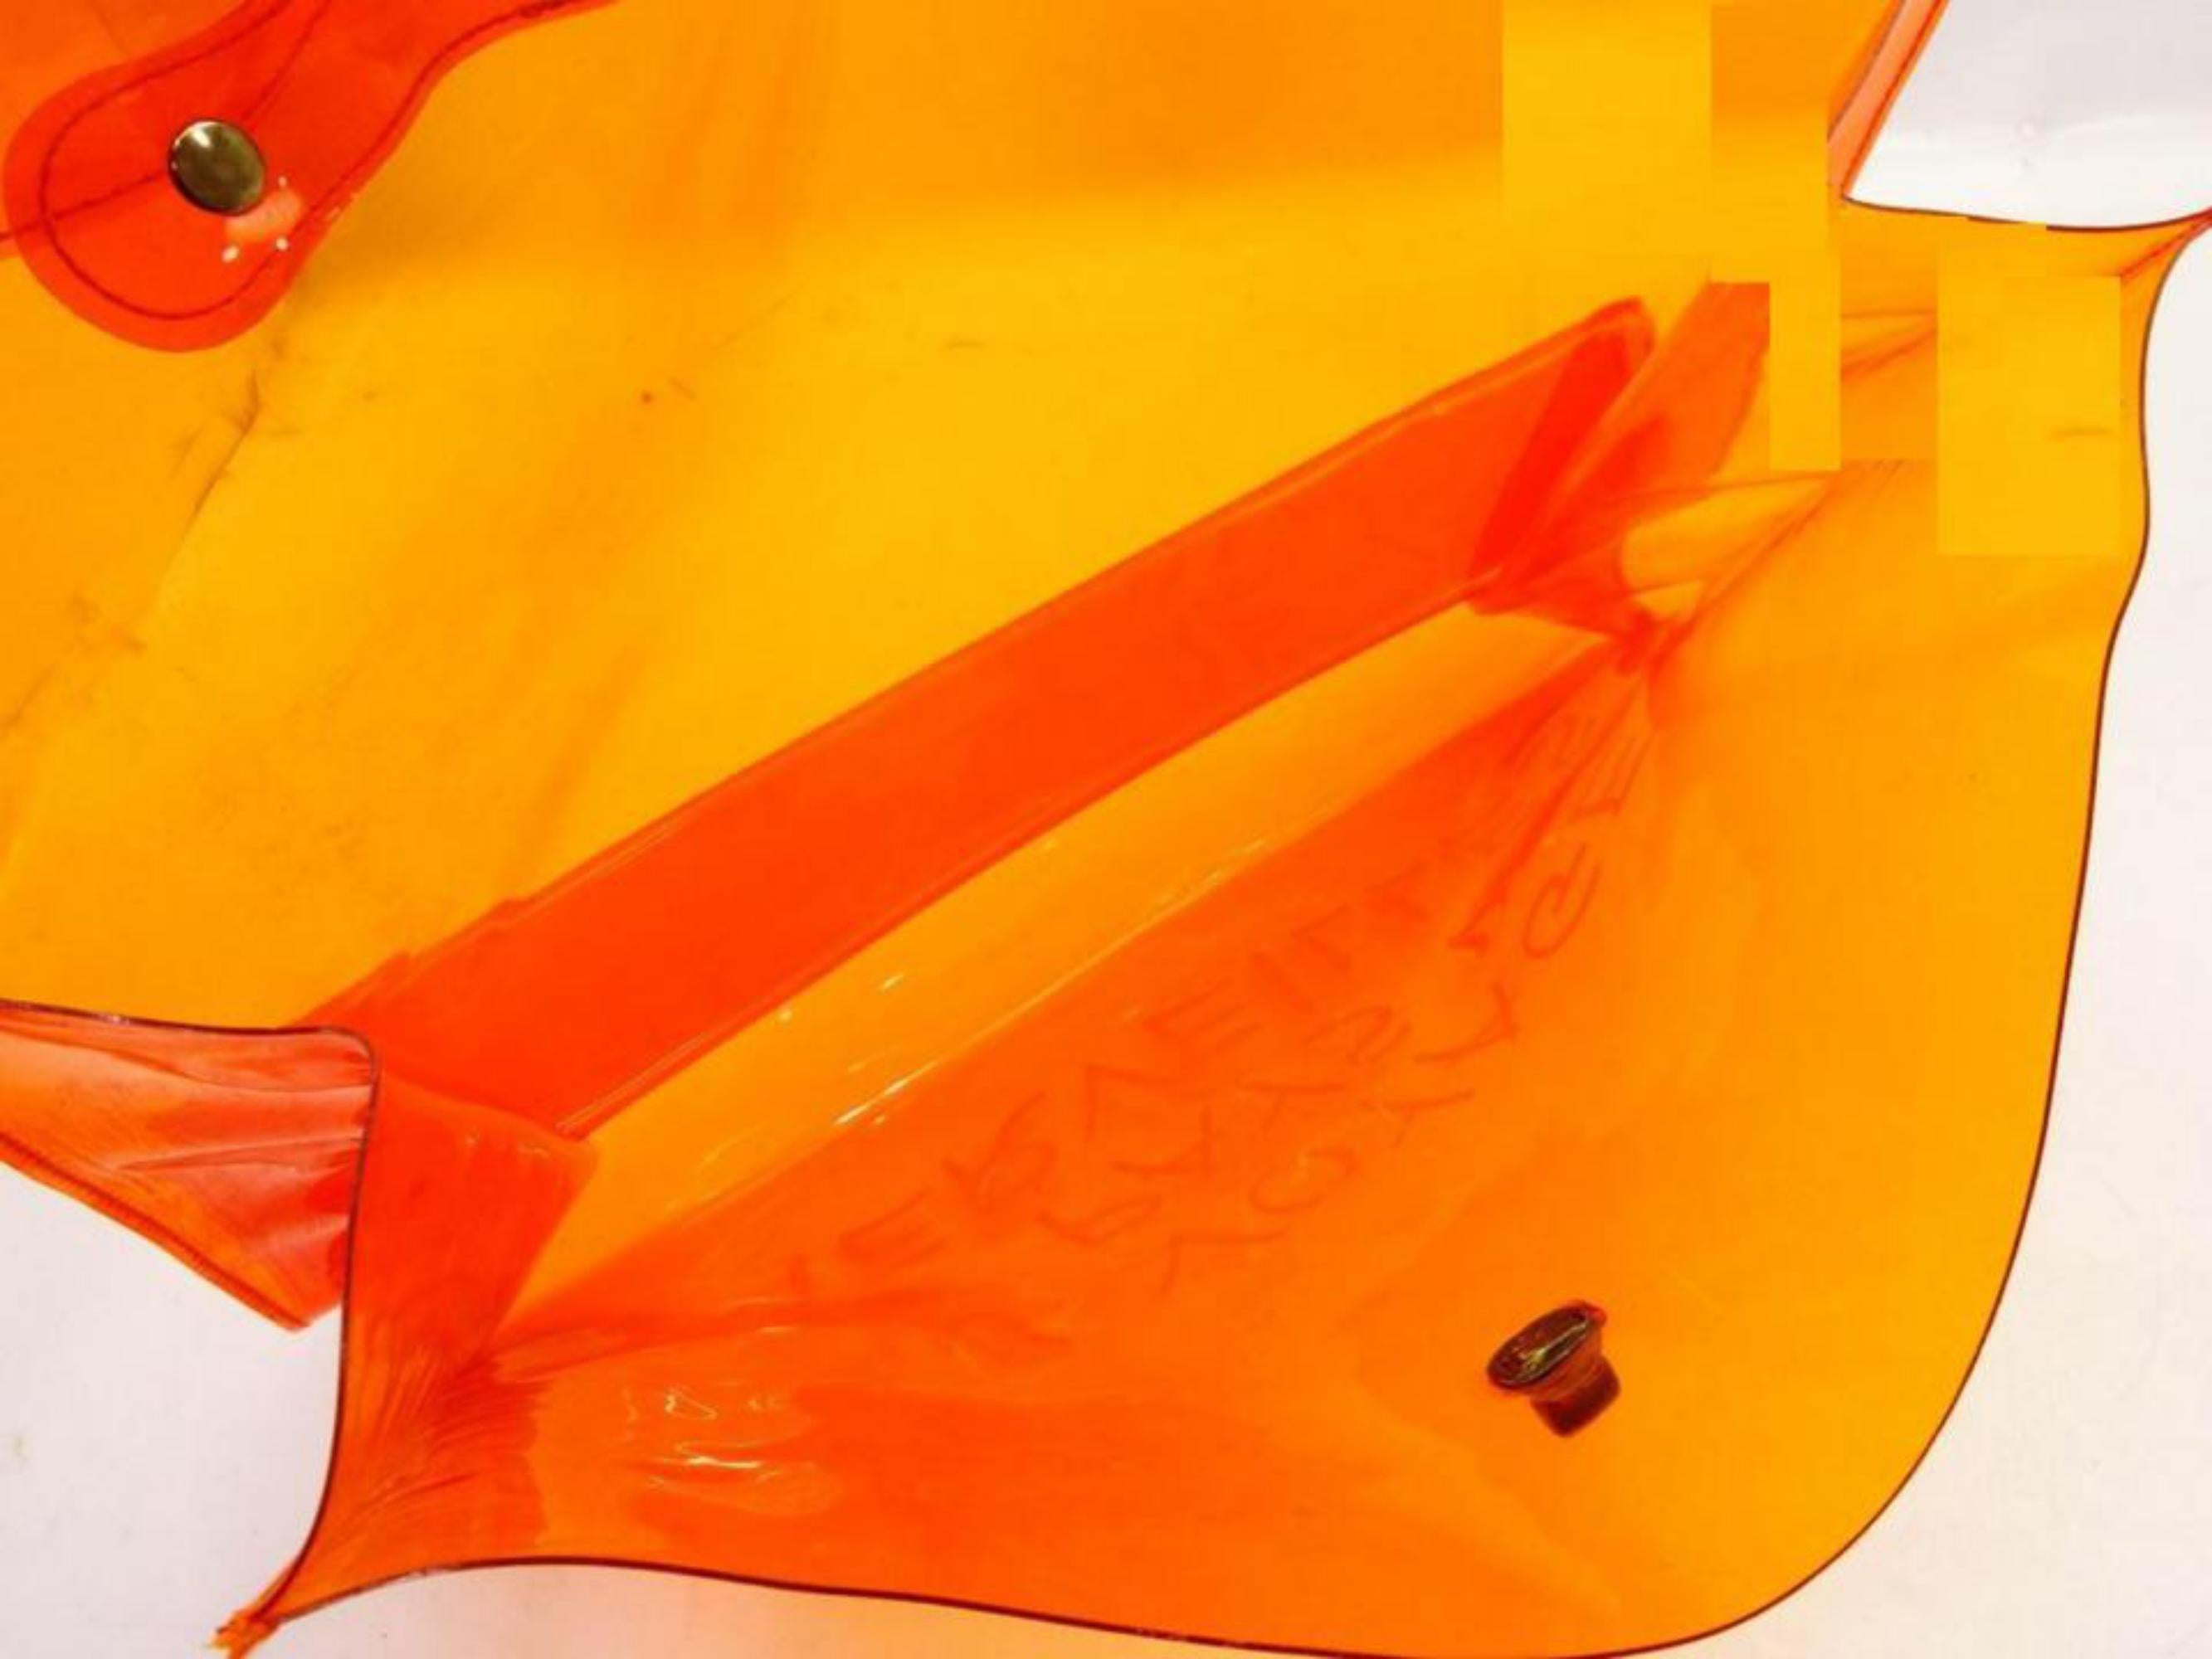 Hermès 1998 Clear Orange Souvenir De L'Exposition Kelly Translucent 241115
Measurements: Length: 15.5 